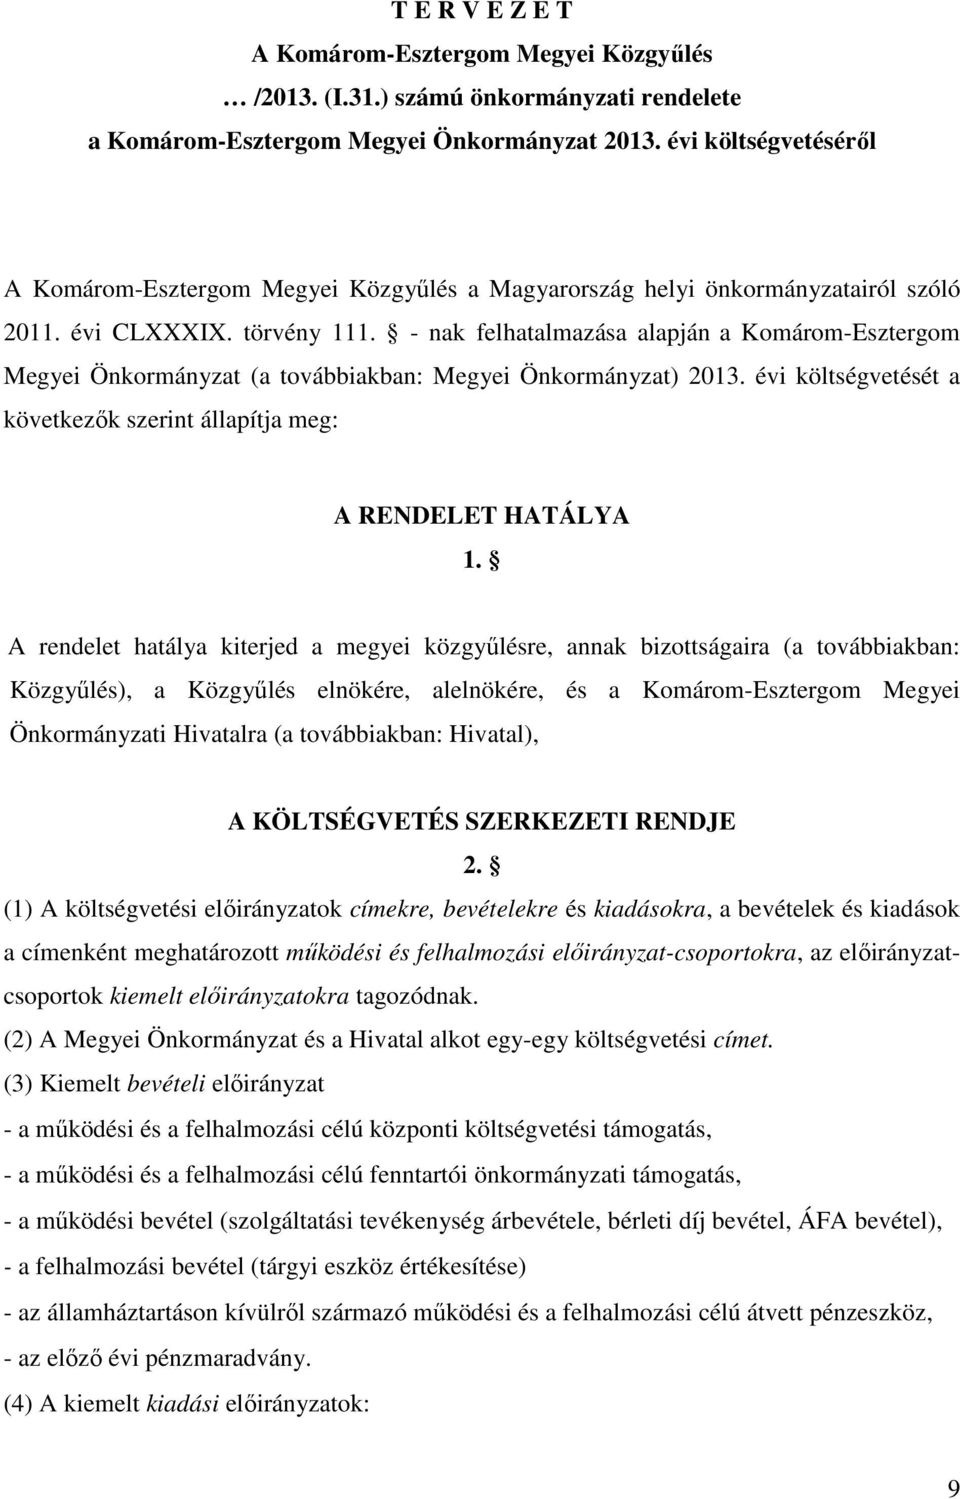 - nak felhatalmazása alapján a Komárom-Esztergom Megyei Önkormányzat (a továbbiakban: Megyei Önkormányzat) 2013. évi költségvetését a következők szerint állapítja meg: A RENDELET HATÁLYA 1.